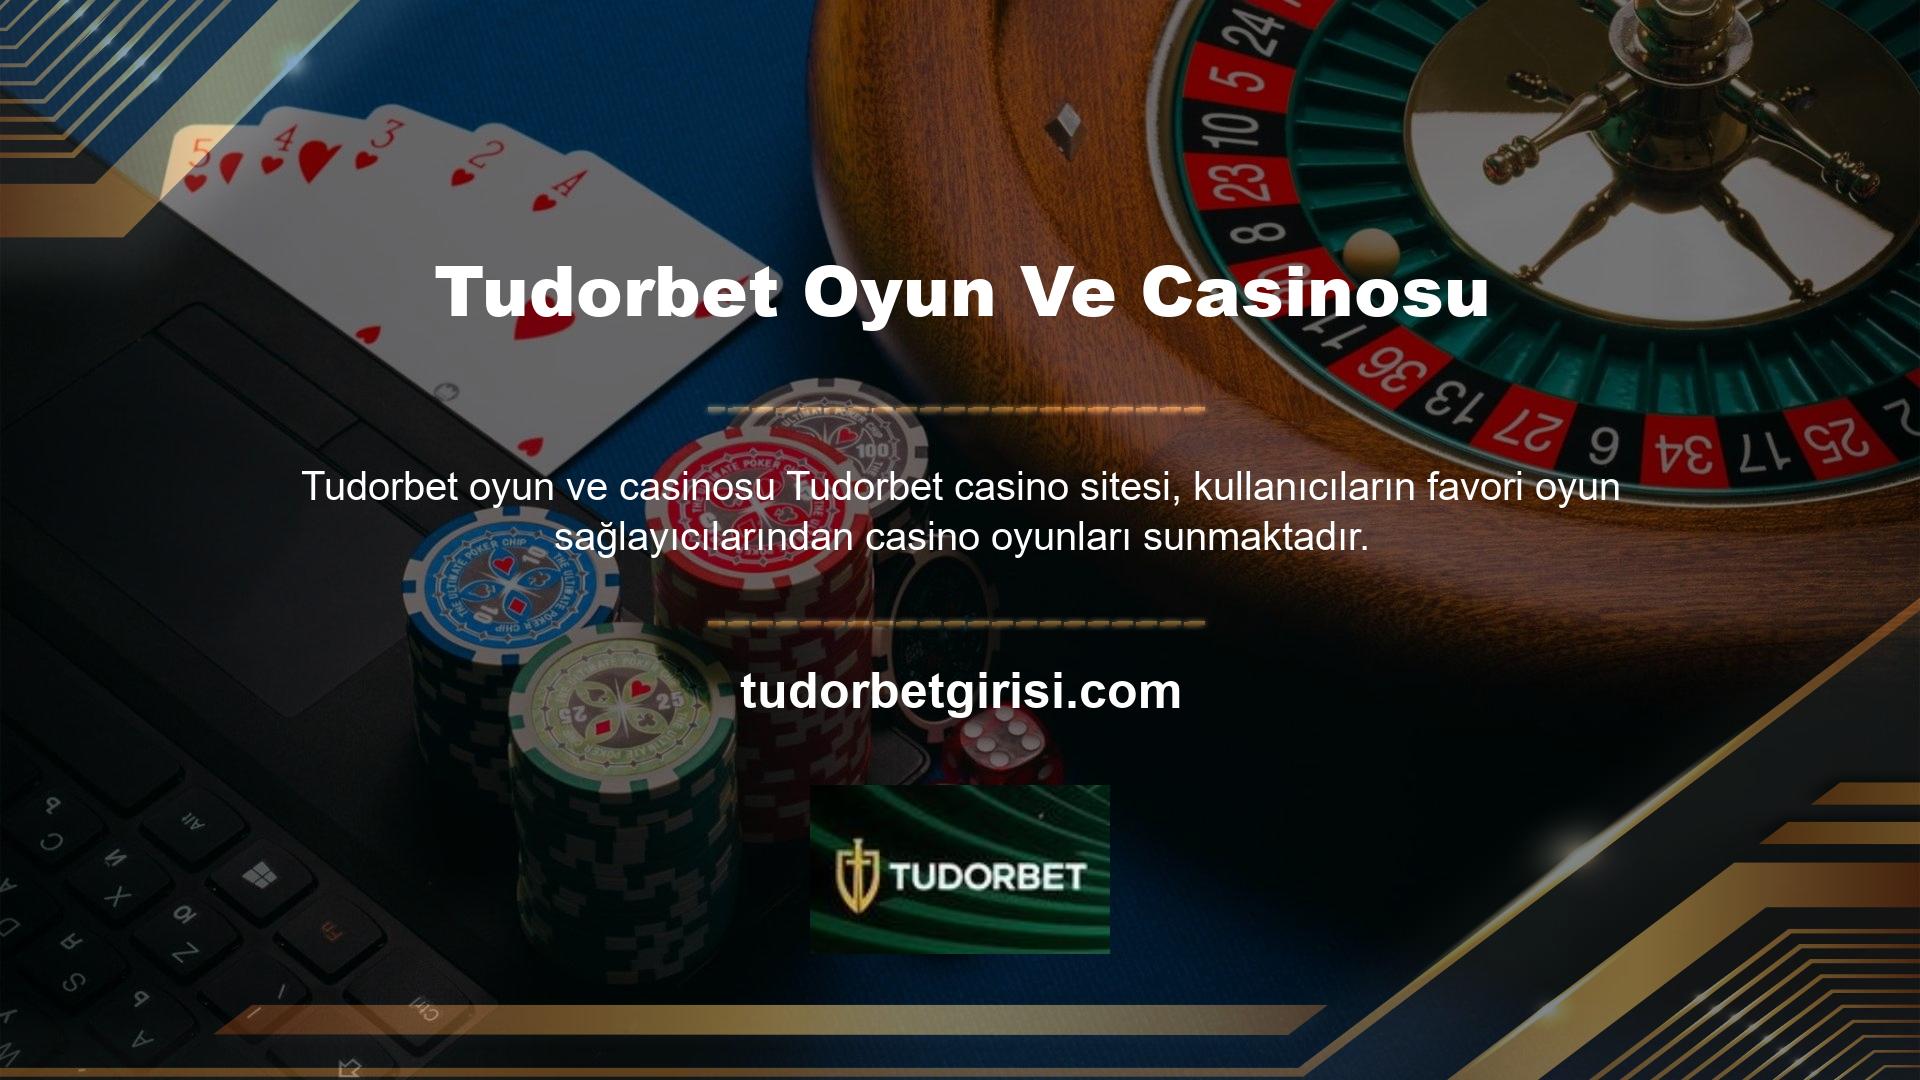 Jackpotlar eğlenceli ve kaliteli casino oyunları Tudorbet dağıtılmaktadır